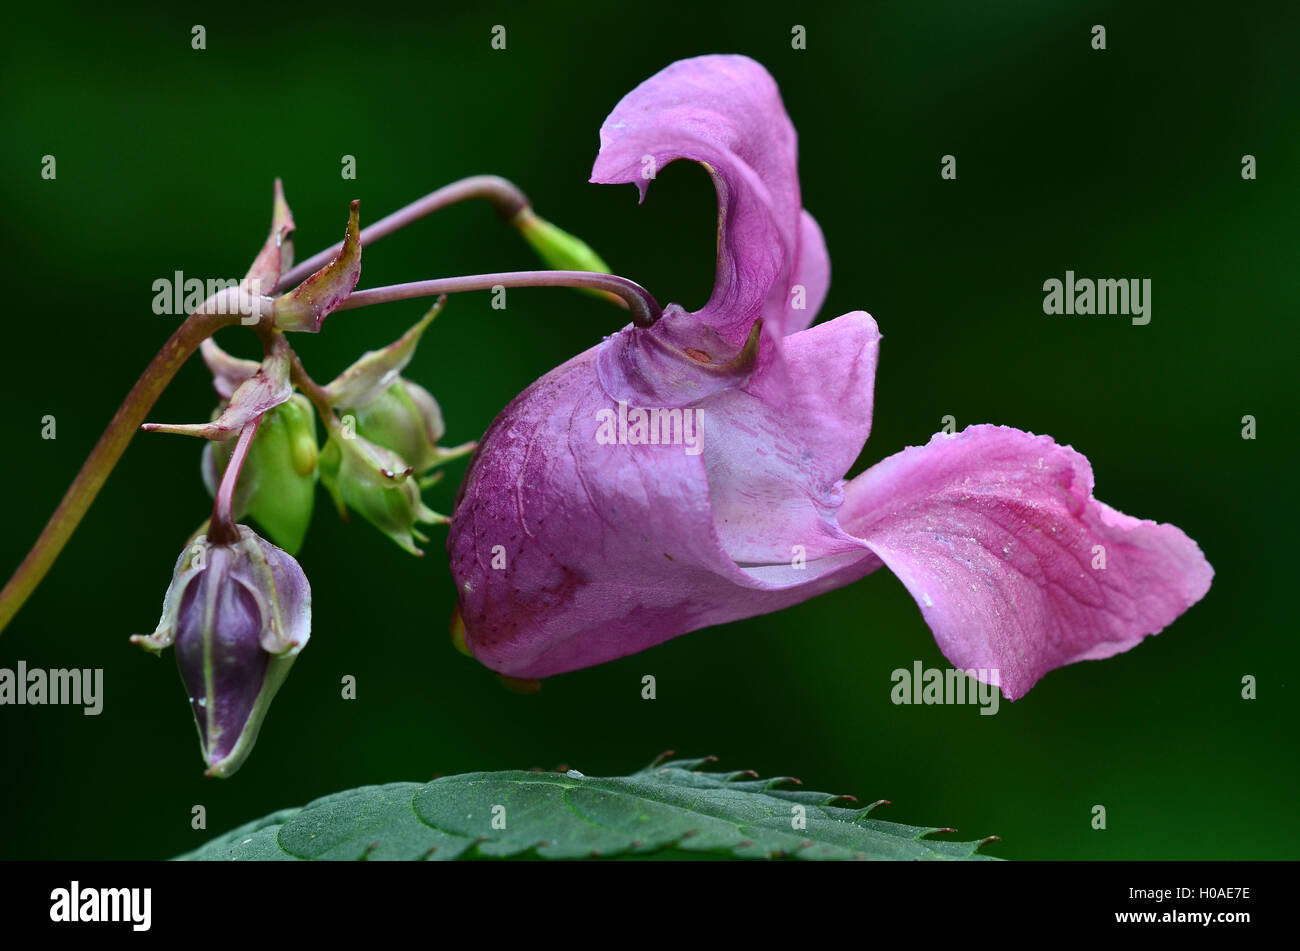 Indian or Himalayan balsam Stock Photo